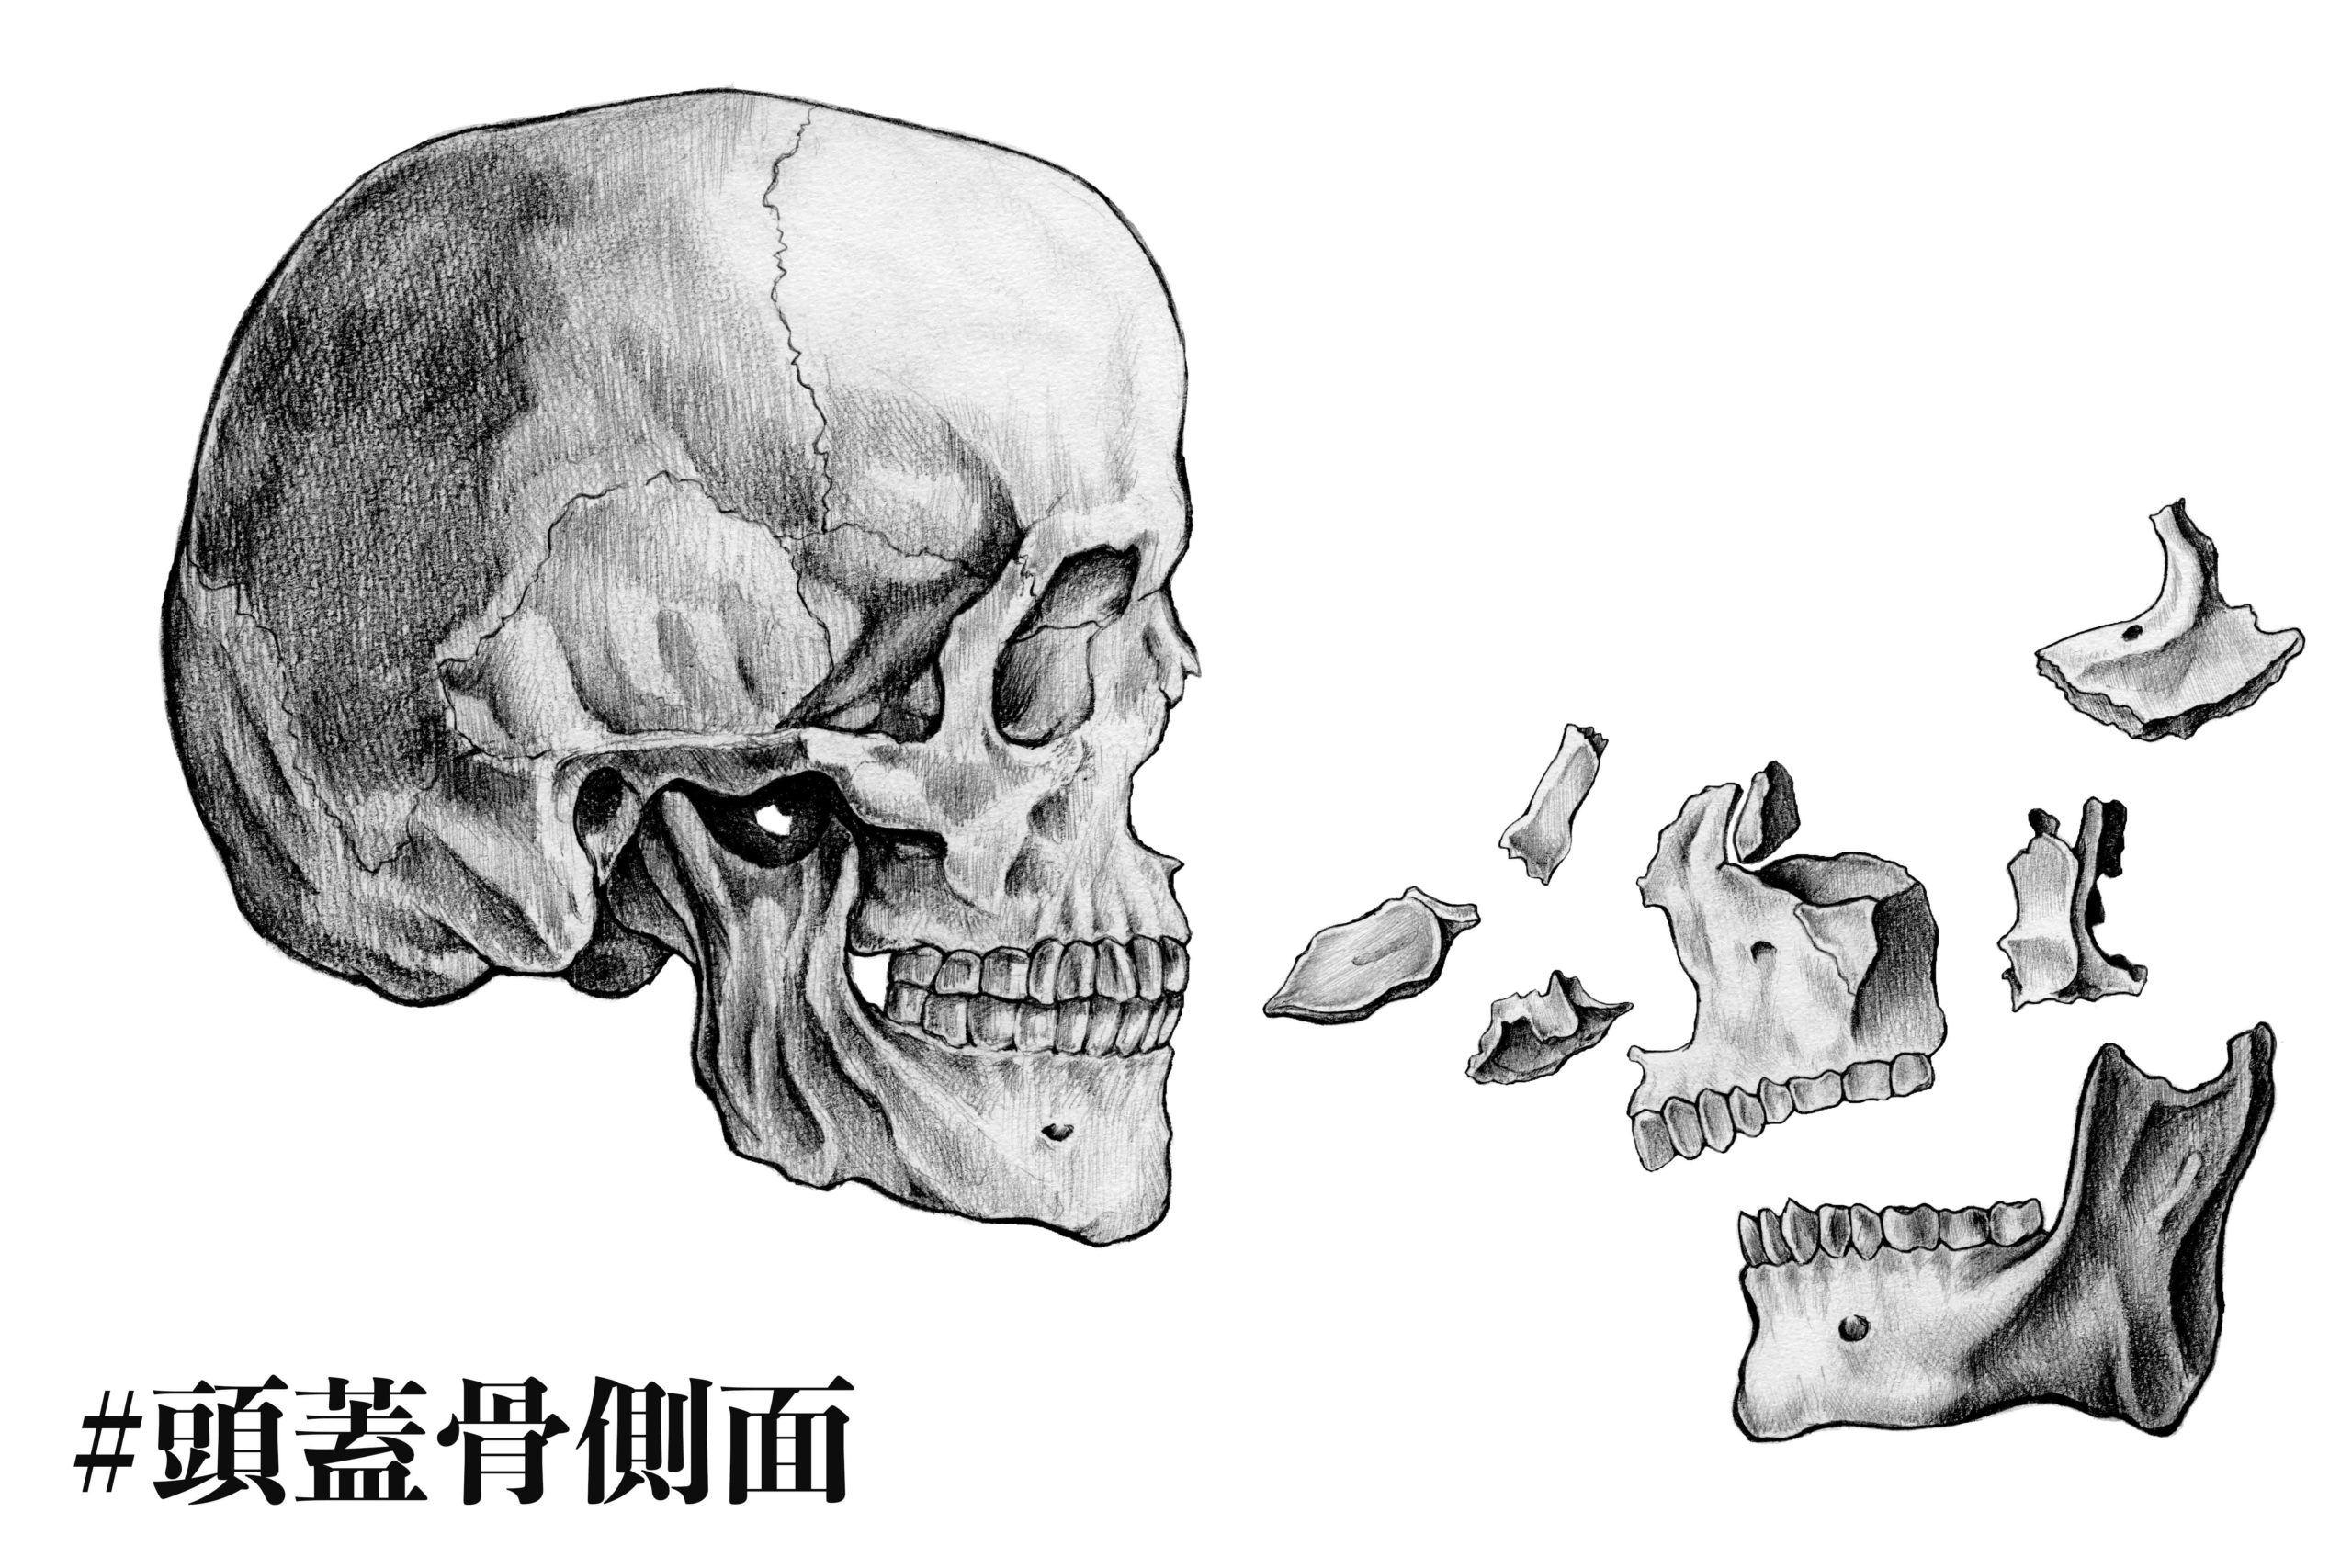 解剖学 2 頭蓋骨の側面から見た構成 ナツヲカケル 兼業クリエイター雑記